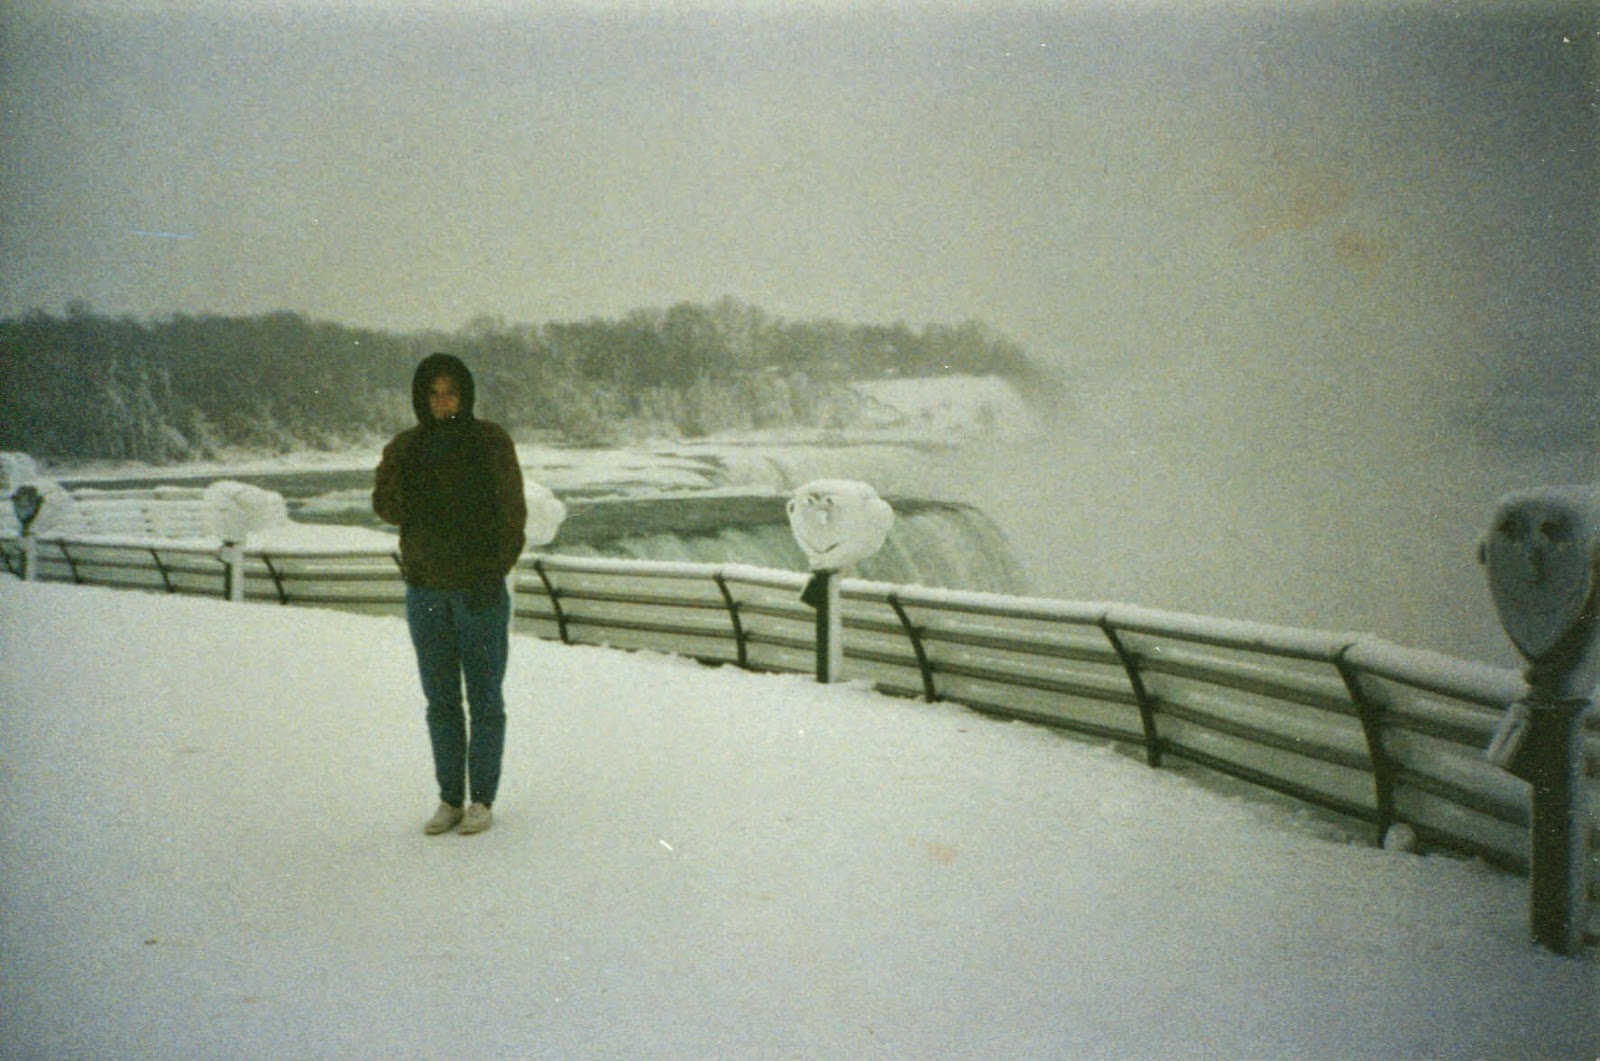 Niagara Falls in 1994